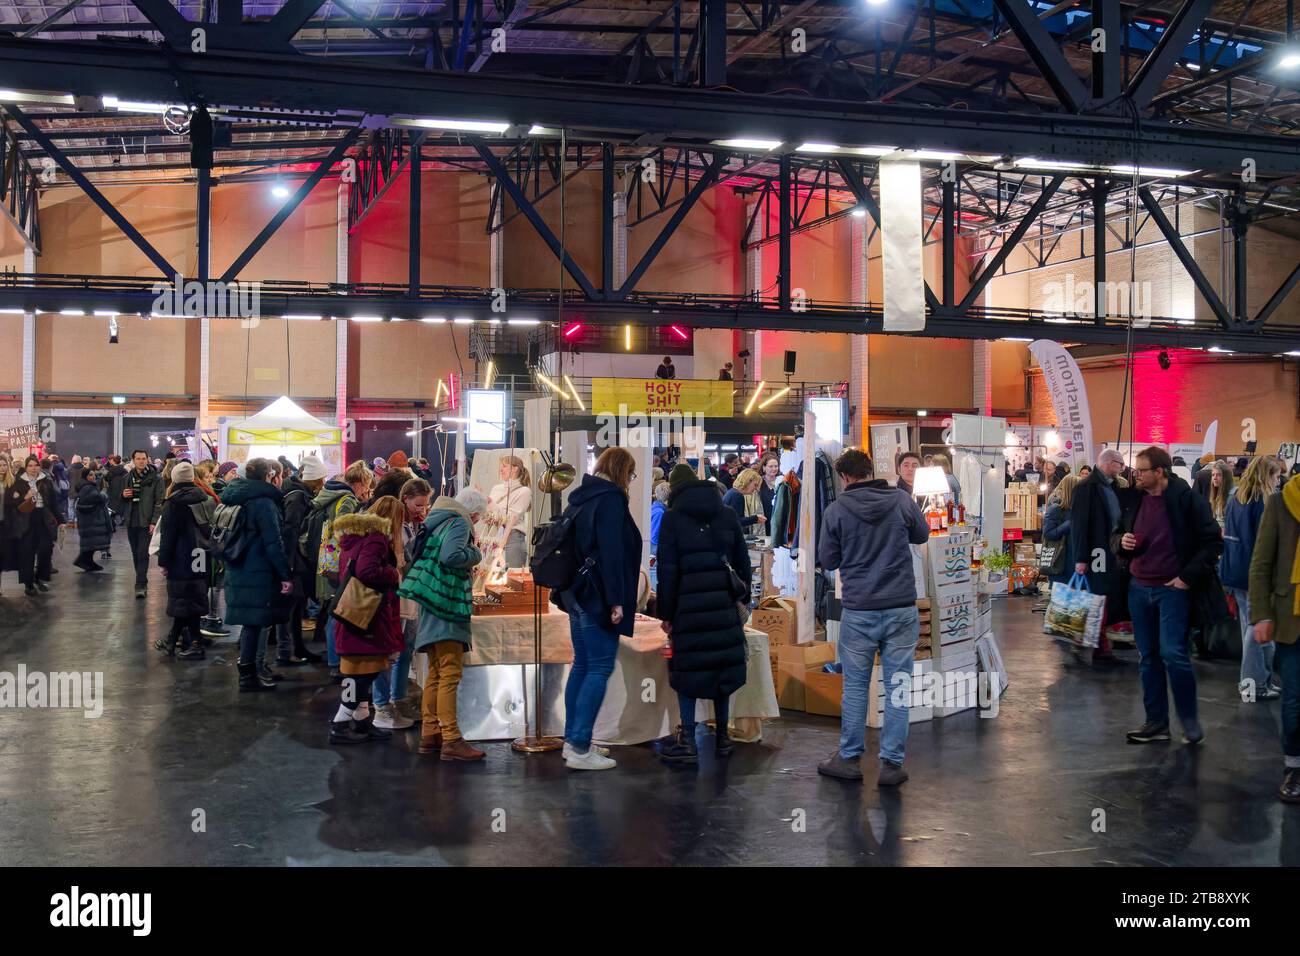 Weihnachtsmarkt in der Arena in Treptow, Holy Shit Shopping, Innenaufnahme, Berlin Stock Photo